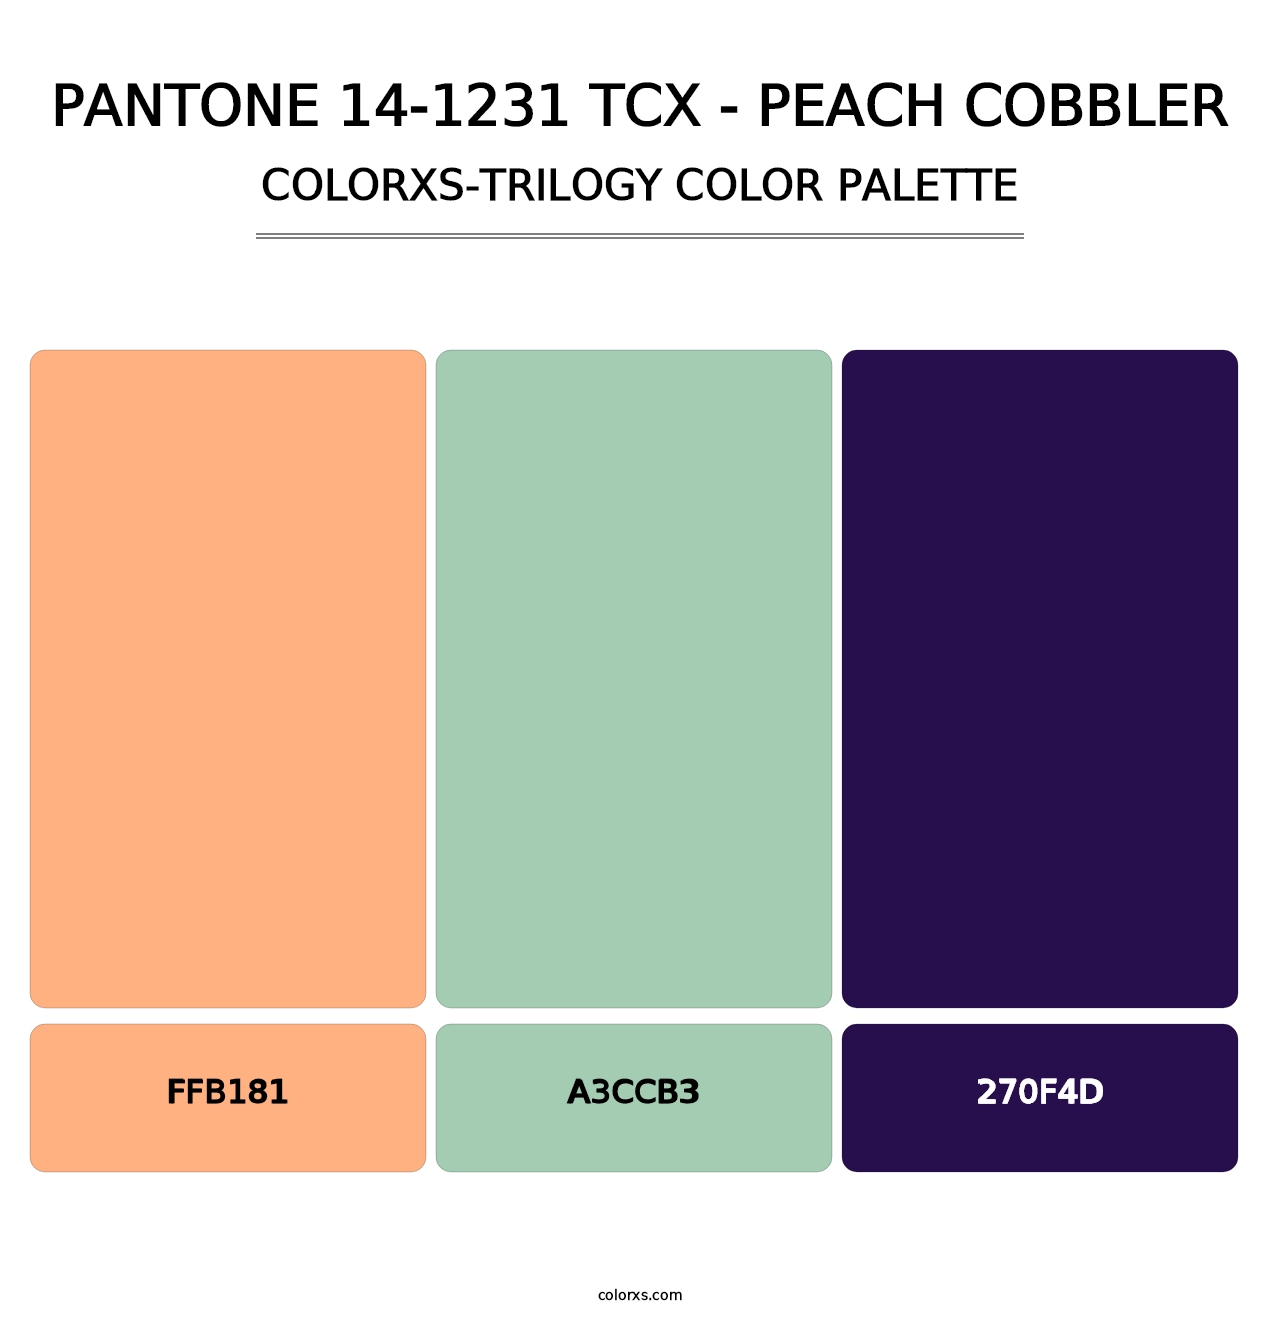 PANTONE 14-1231 TCX - Peach Cobbler - Colorxs Trilogy Palette